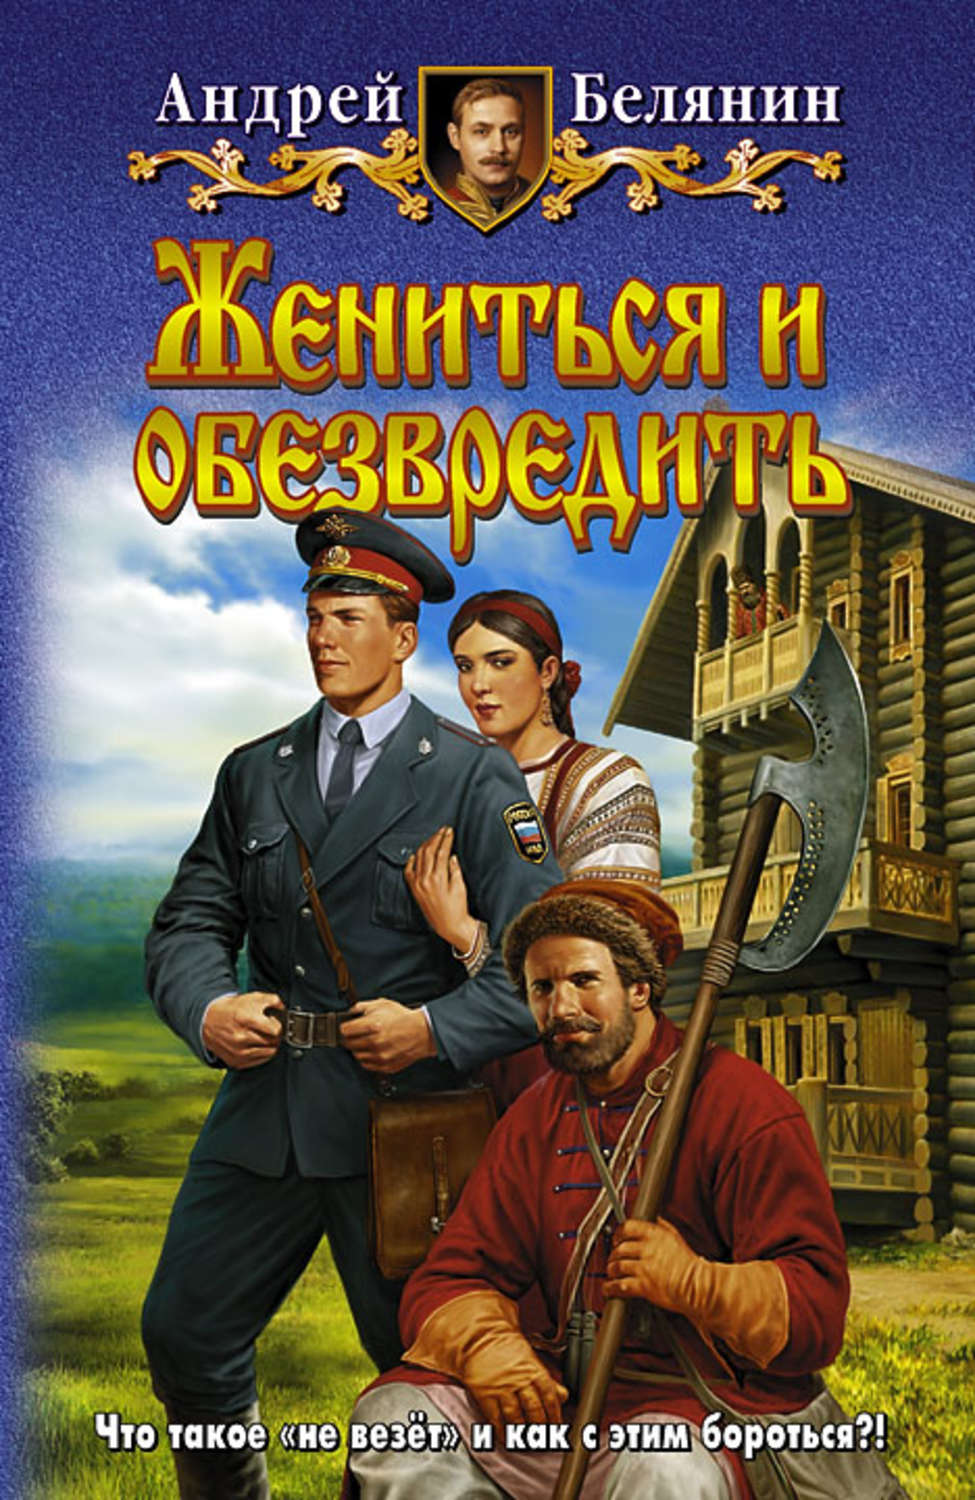 Российское фэнтези книги скачать бесплатно fb2